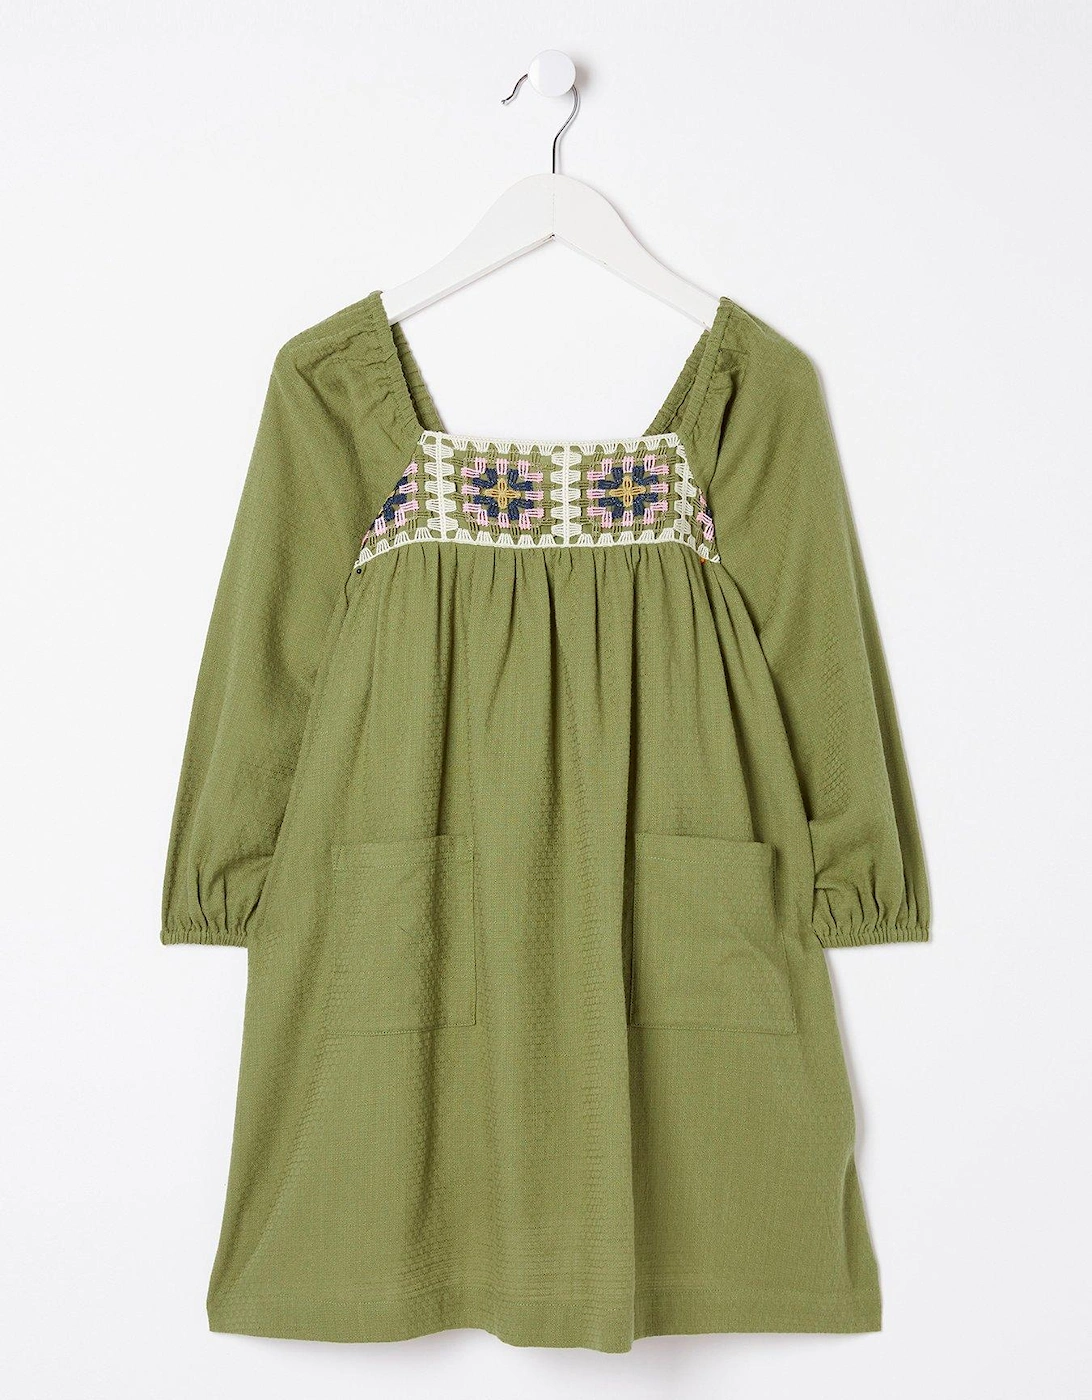 Girls Crochet Dress - Olive Green, 2 of 1